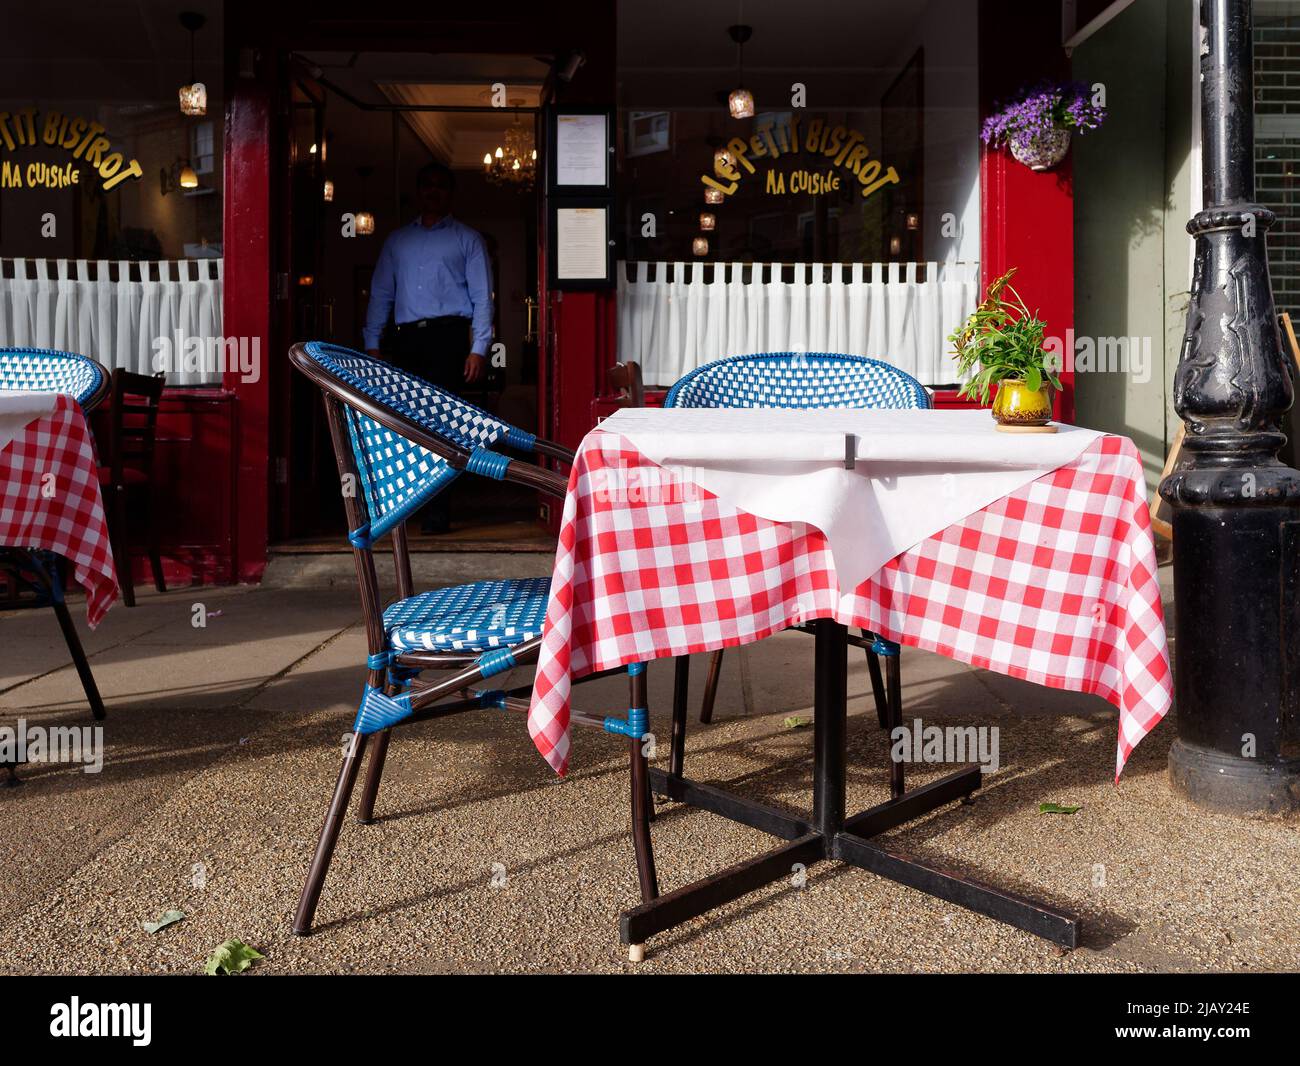 MA Cuisine La Petit Bistro im Dorf Kew. Kellner in einem blauen Hemd mit Schatten verdecktem Kopf nähert sich den Tischen draußen. London. Stockfoto